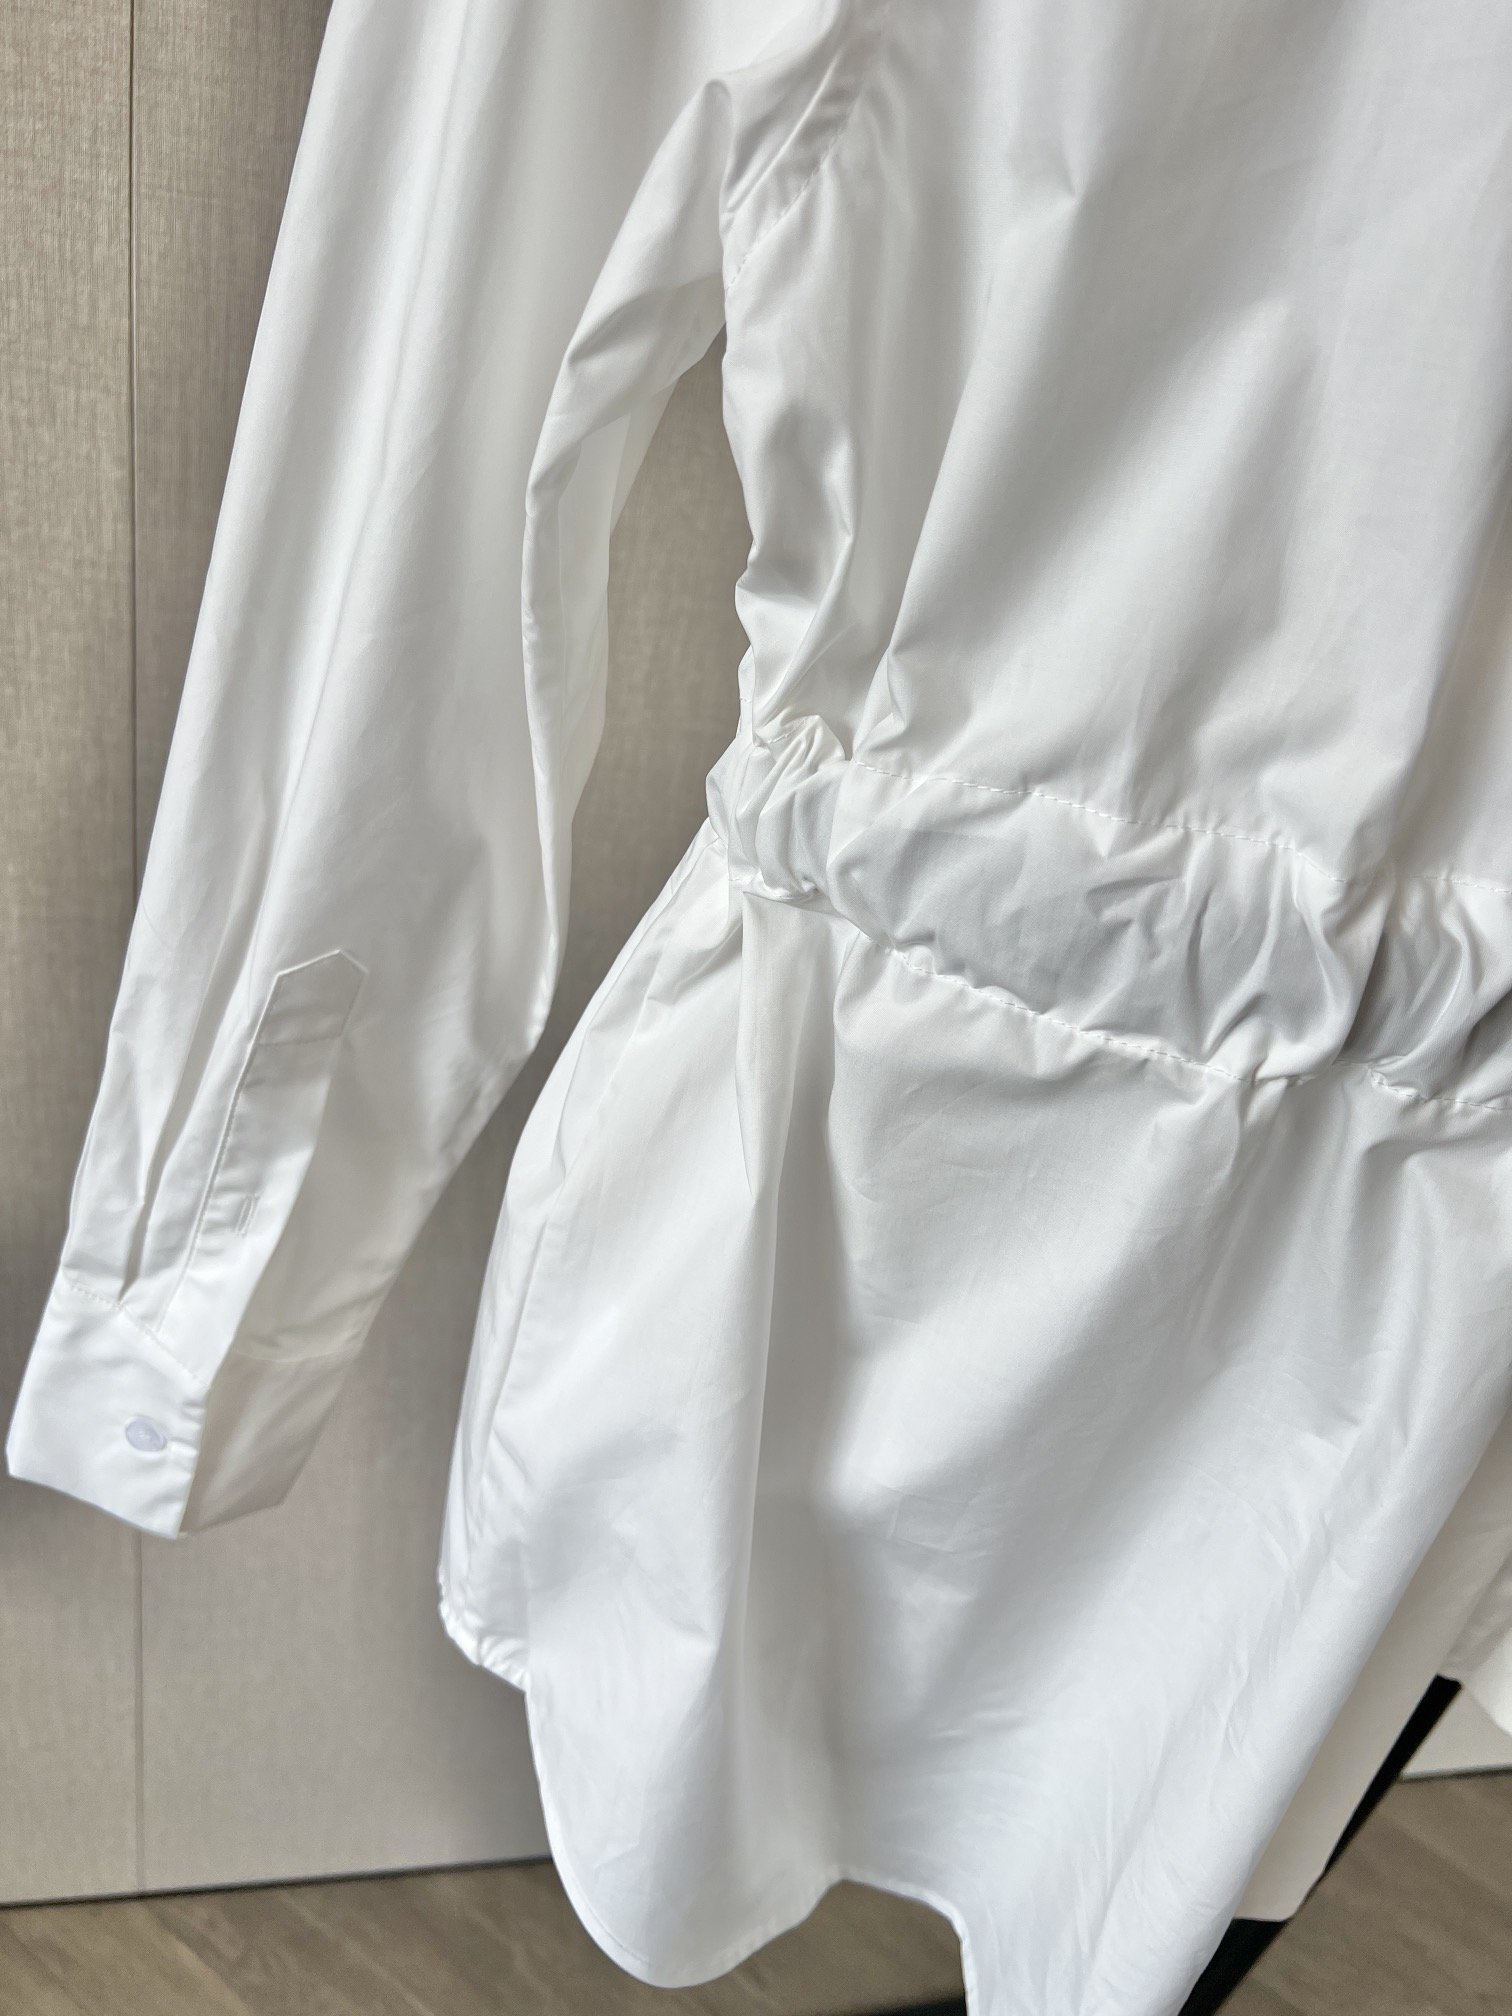 AW2024早春系列经典的黑白撞色搭配白色衬衣设计上了内嵌腰带摩登时尚定制激光纽扣细节拉满哈